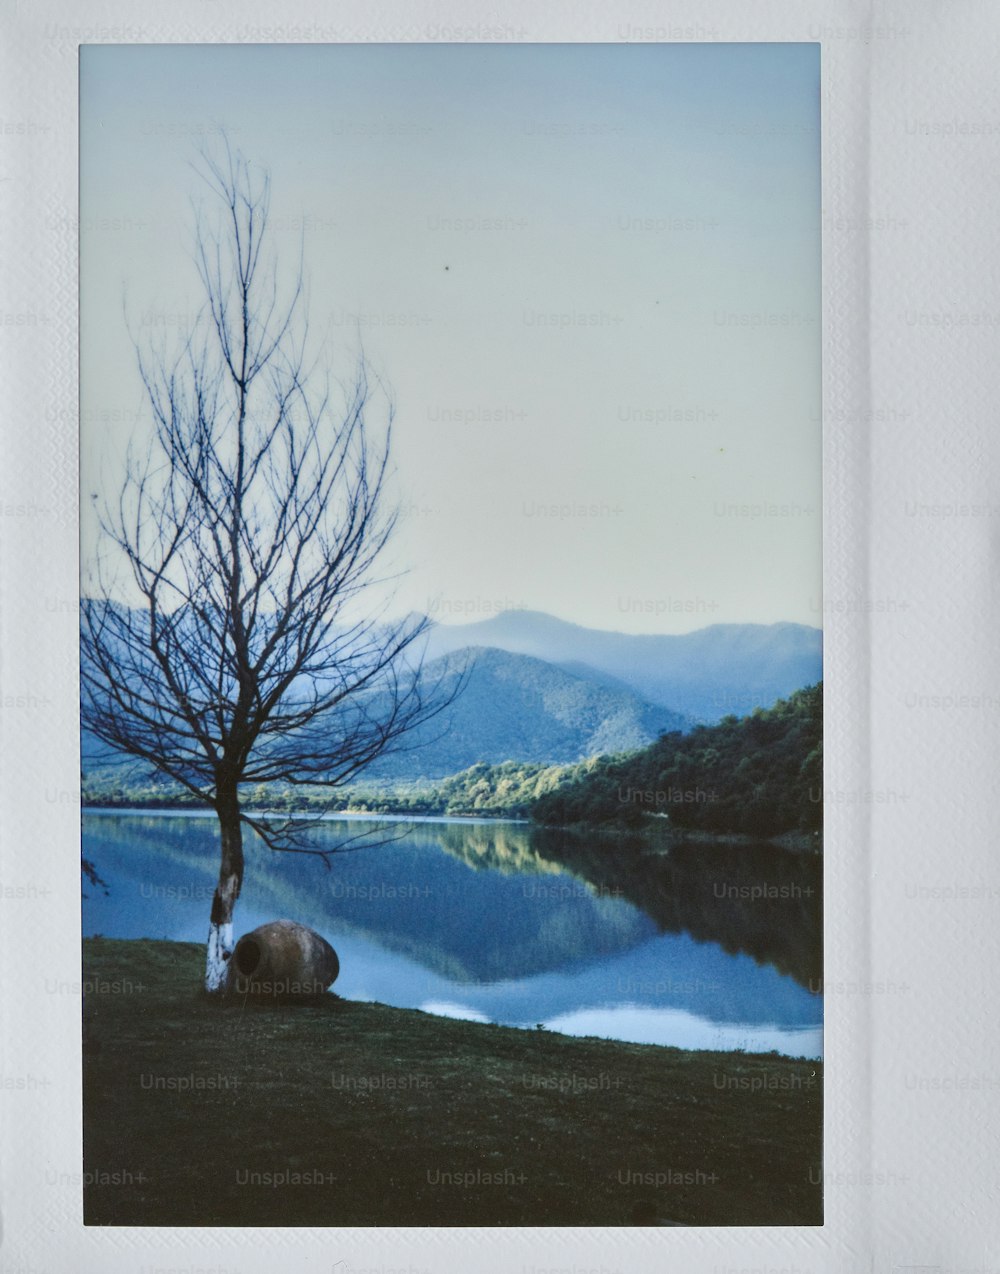 Una imagen de un árbol y un cuerpo de agua